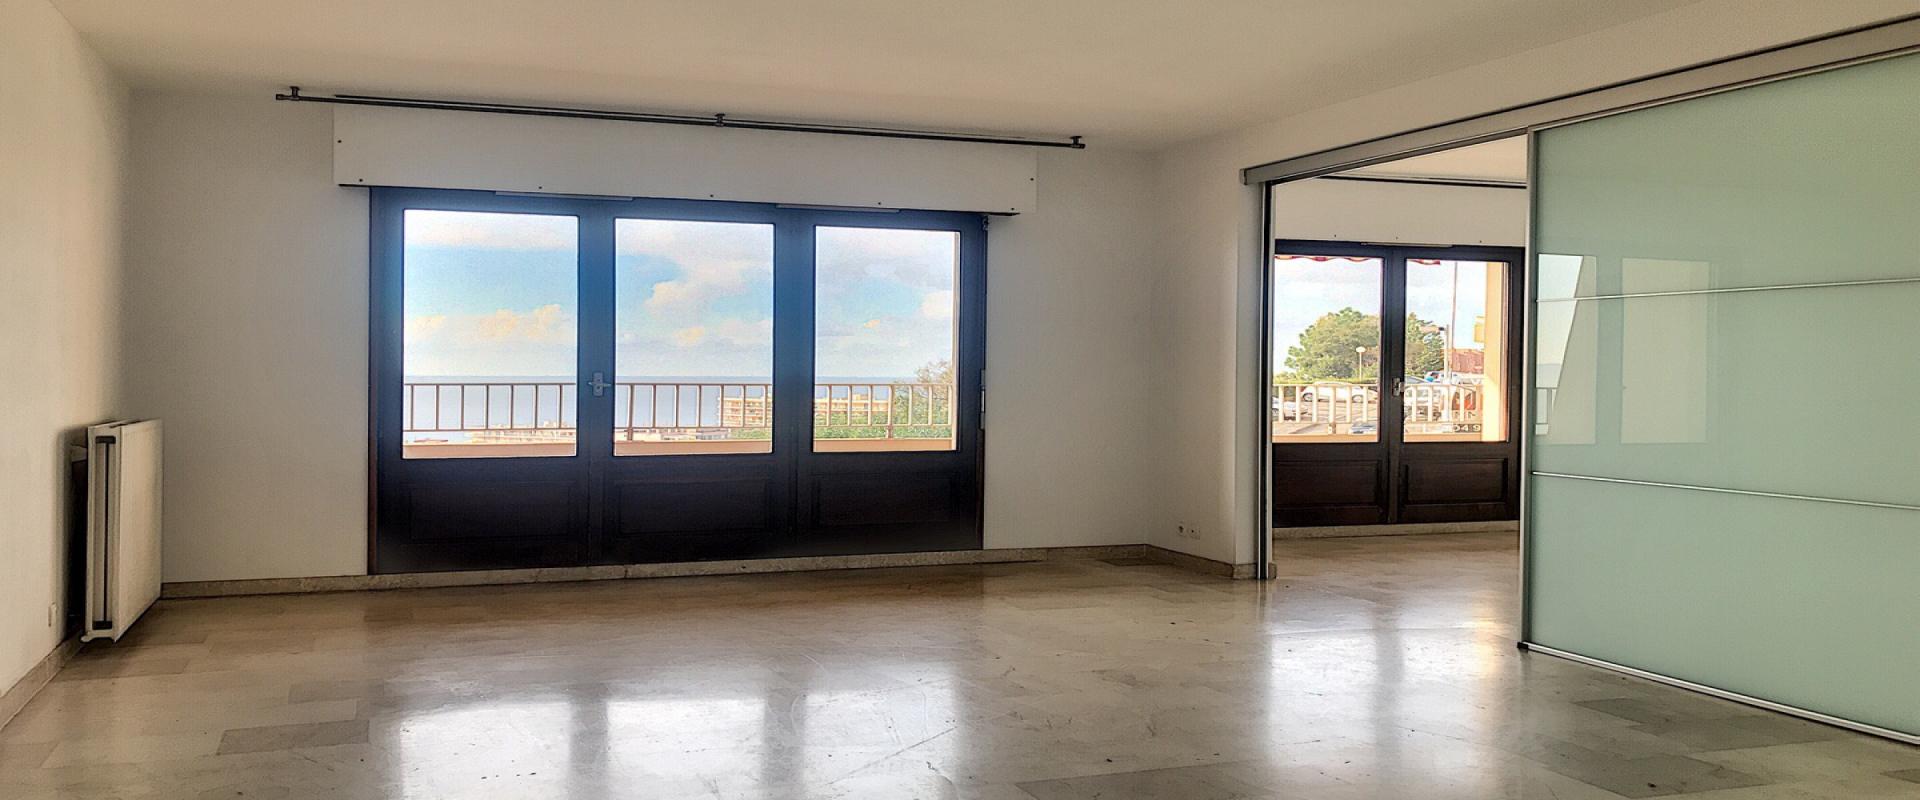 ***NOUVEAU PRIX***En Corse, à AJACCIO, vente d'un appartement F4 de 86 m² sur la route des SANGUINAIRES